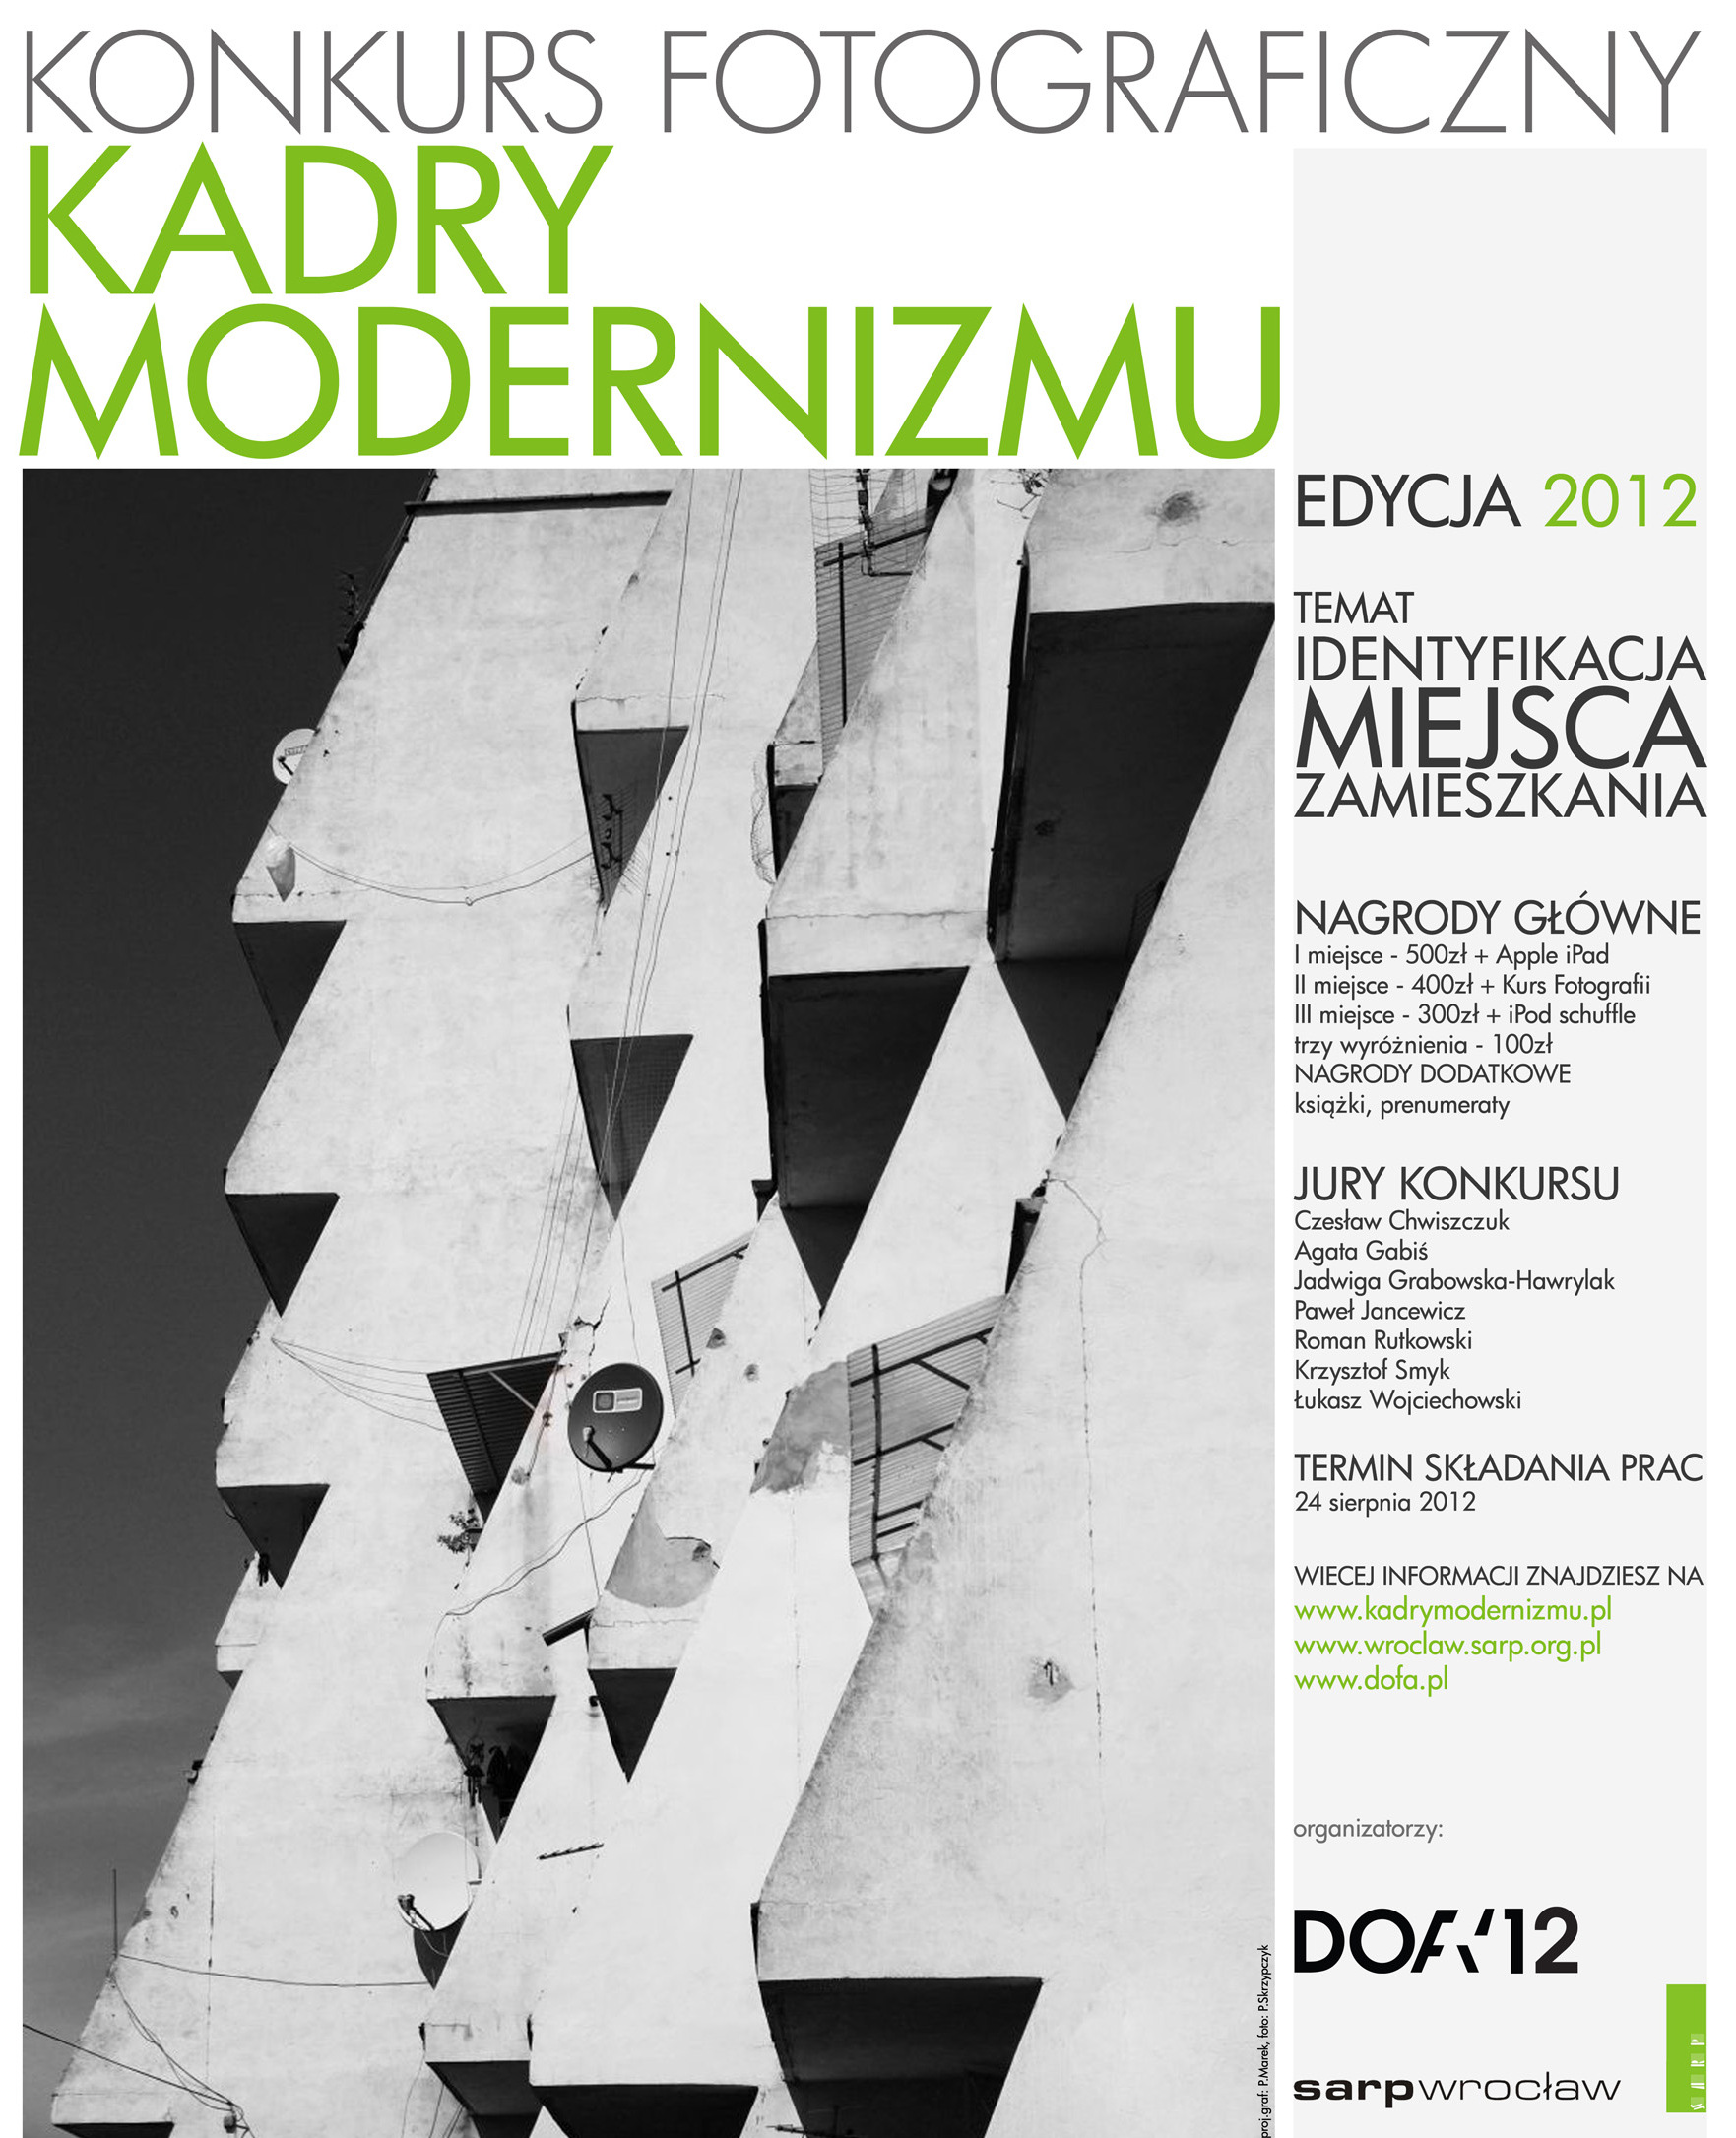 Konkurs fotograficzny Kadry Modernizmu (źródło: materiały prasowe)